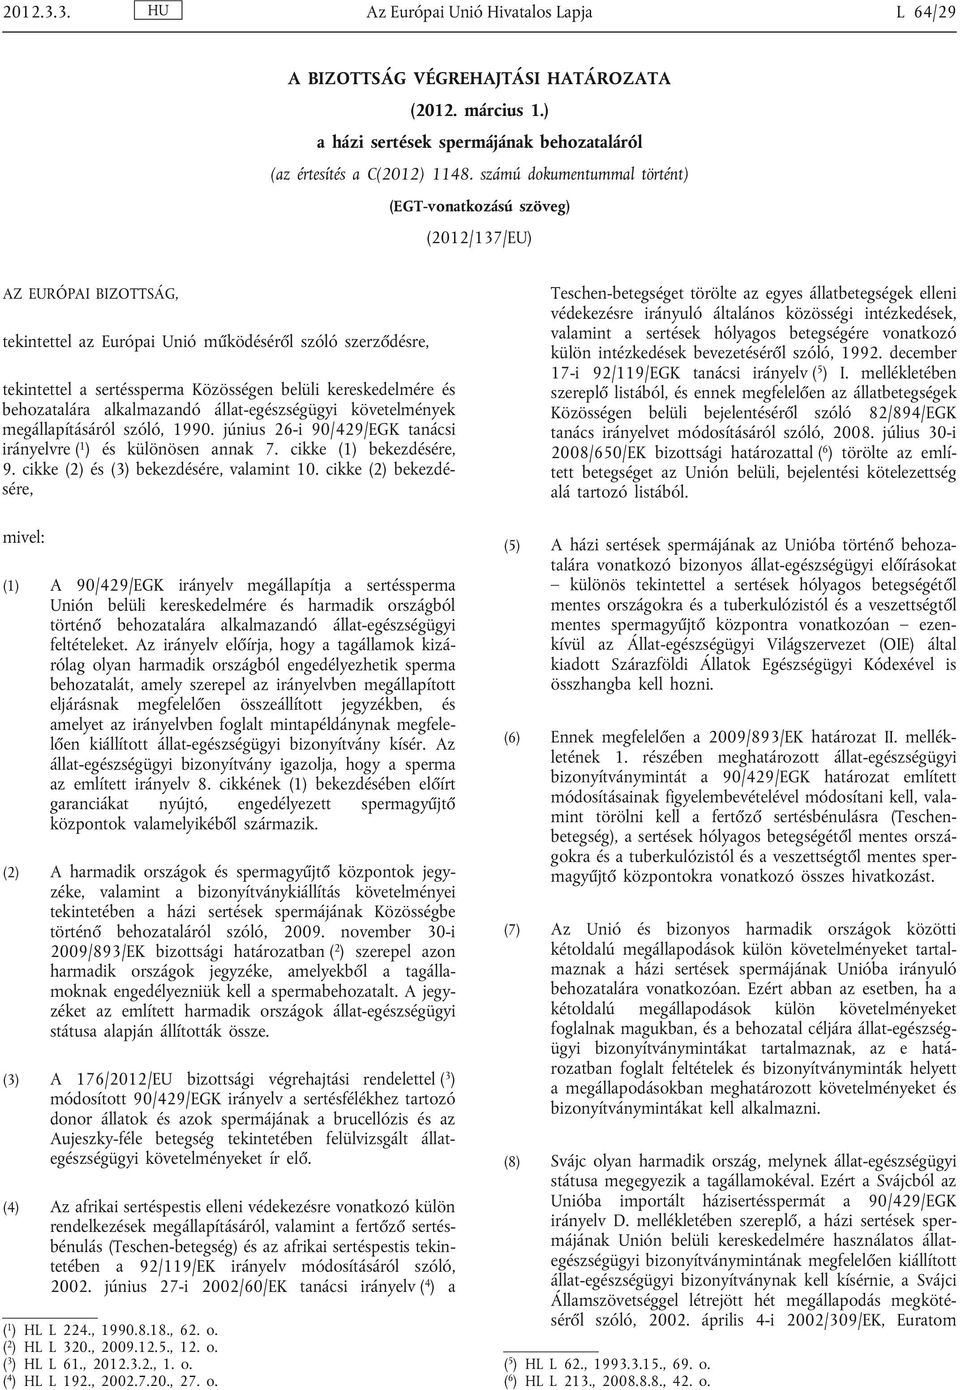 kereskedelmére és behozatalára alkalmazandó állat-egészségügyi követelmények megállapításáról szóló, 1990. június 26-i 90/429/EGK tanácsi irányelvre ( 1 ) és különösen annak 7.